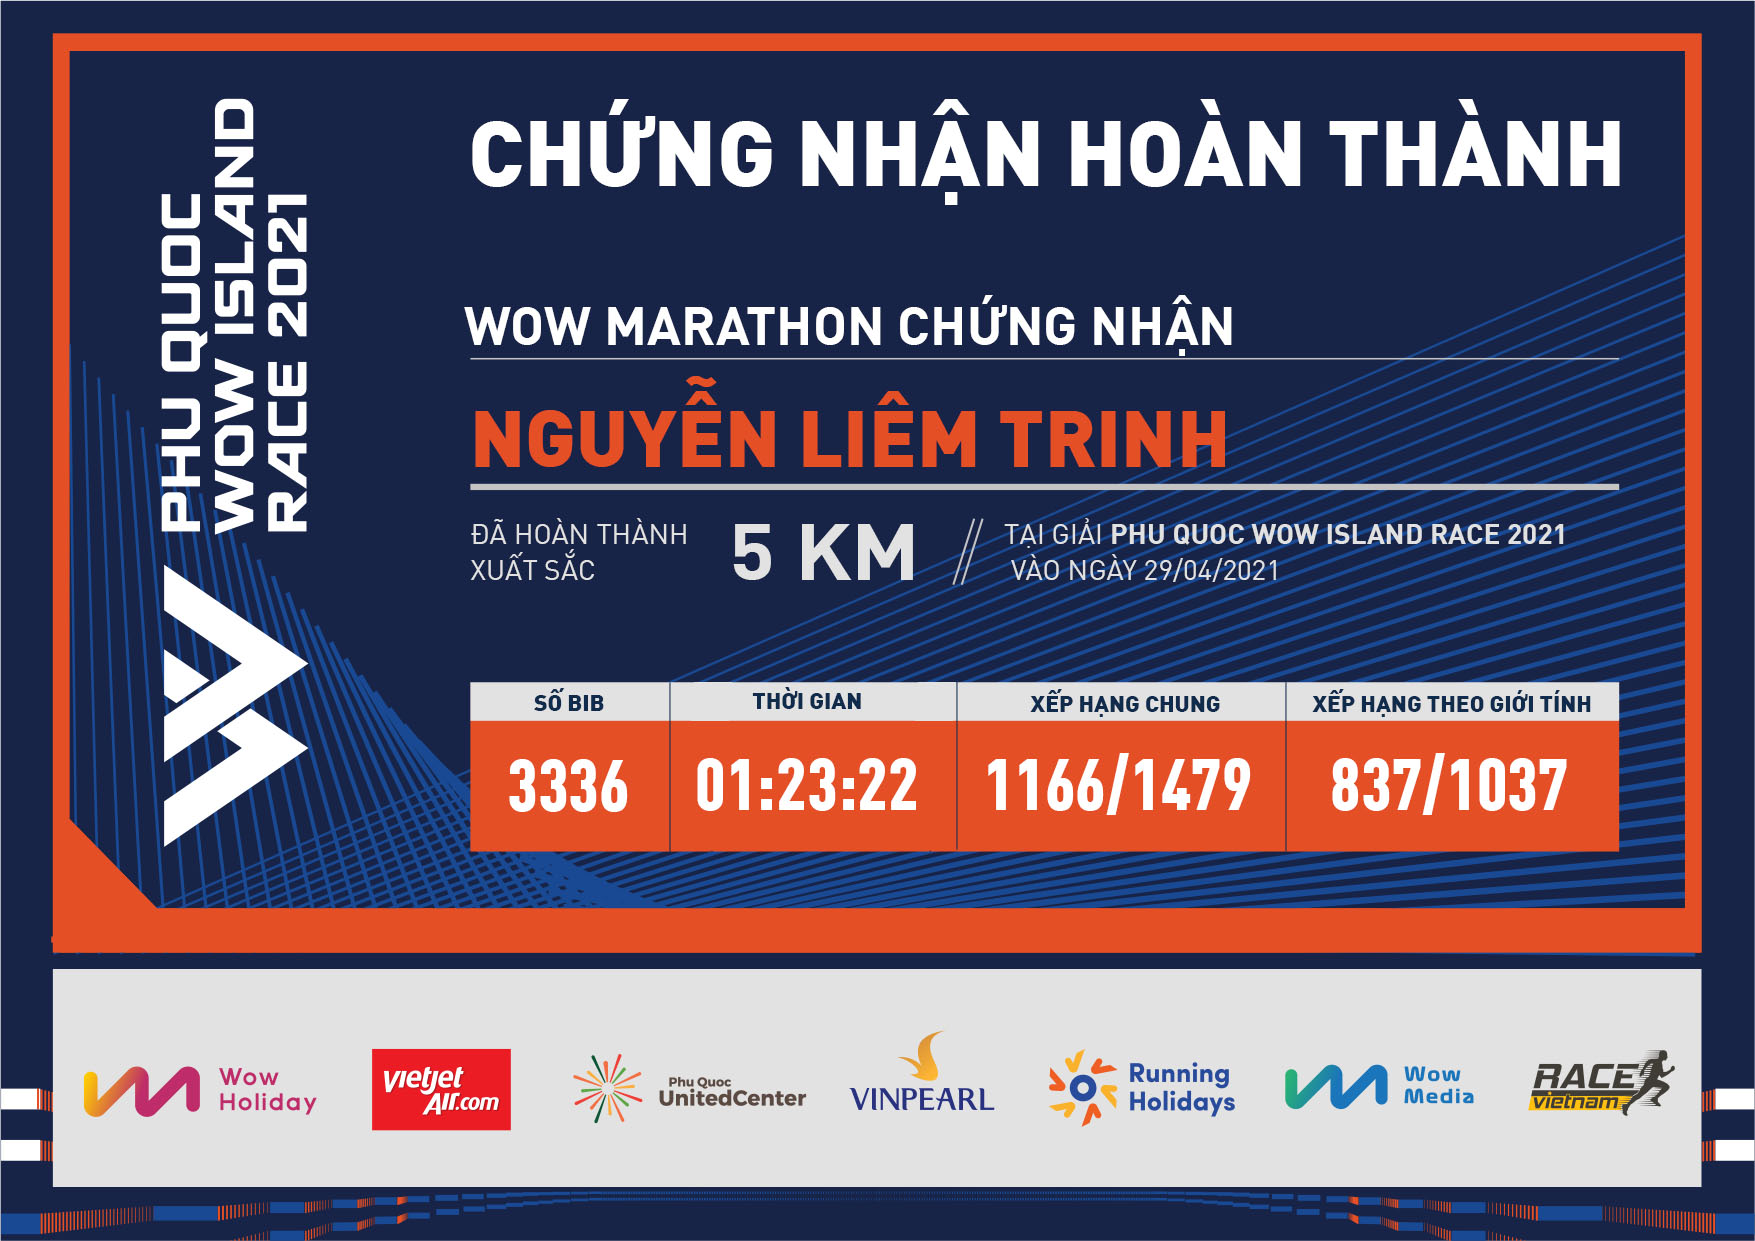 3336 - Nguyễn Liêm Trinh